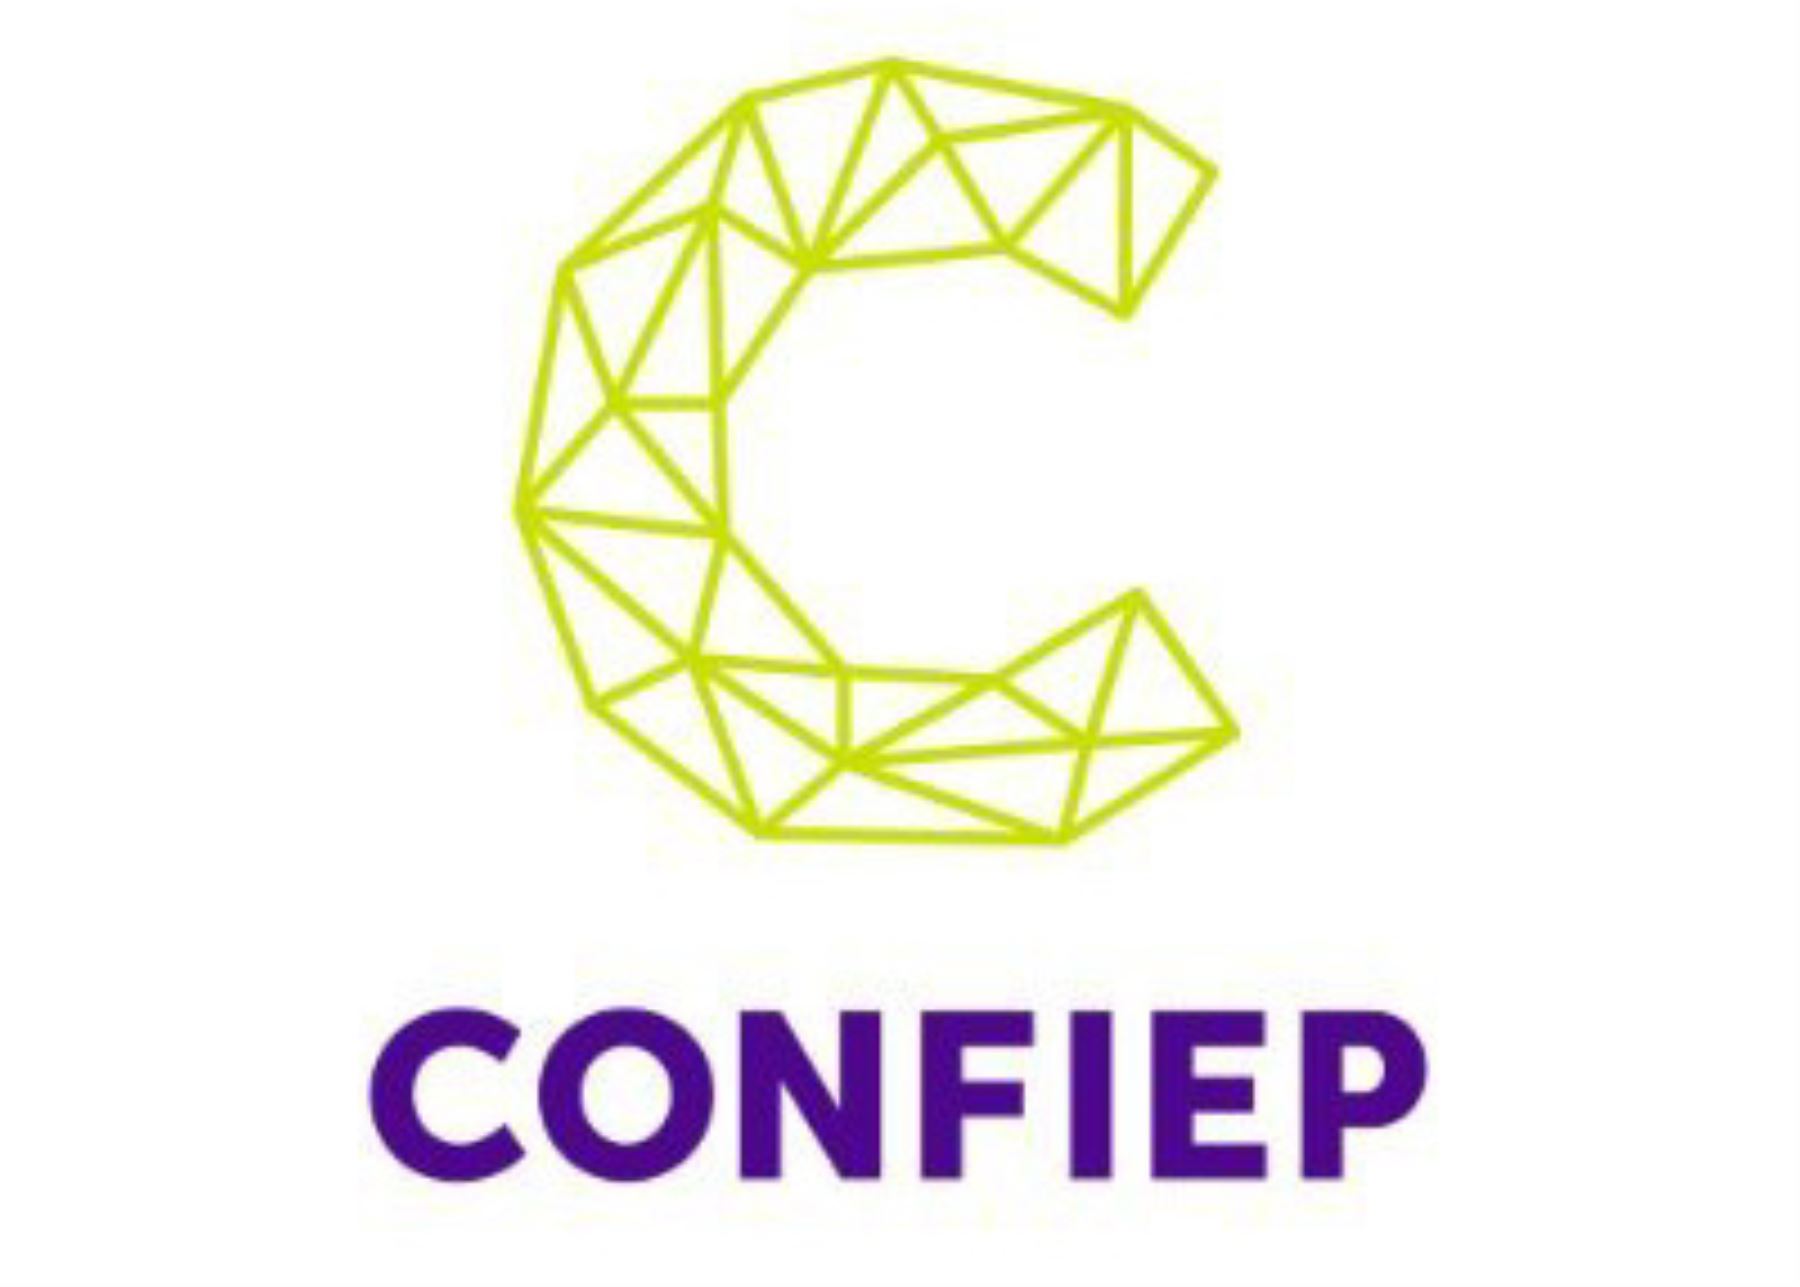 Confiep rechaza todo acto de corrupción y exige al Ministerio Público investigar hechos recientes con celeridad